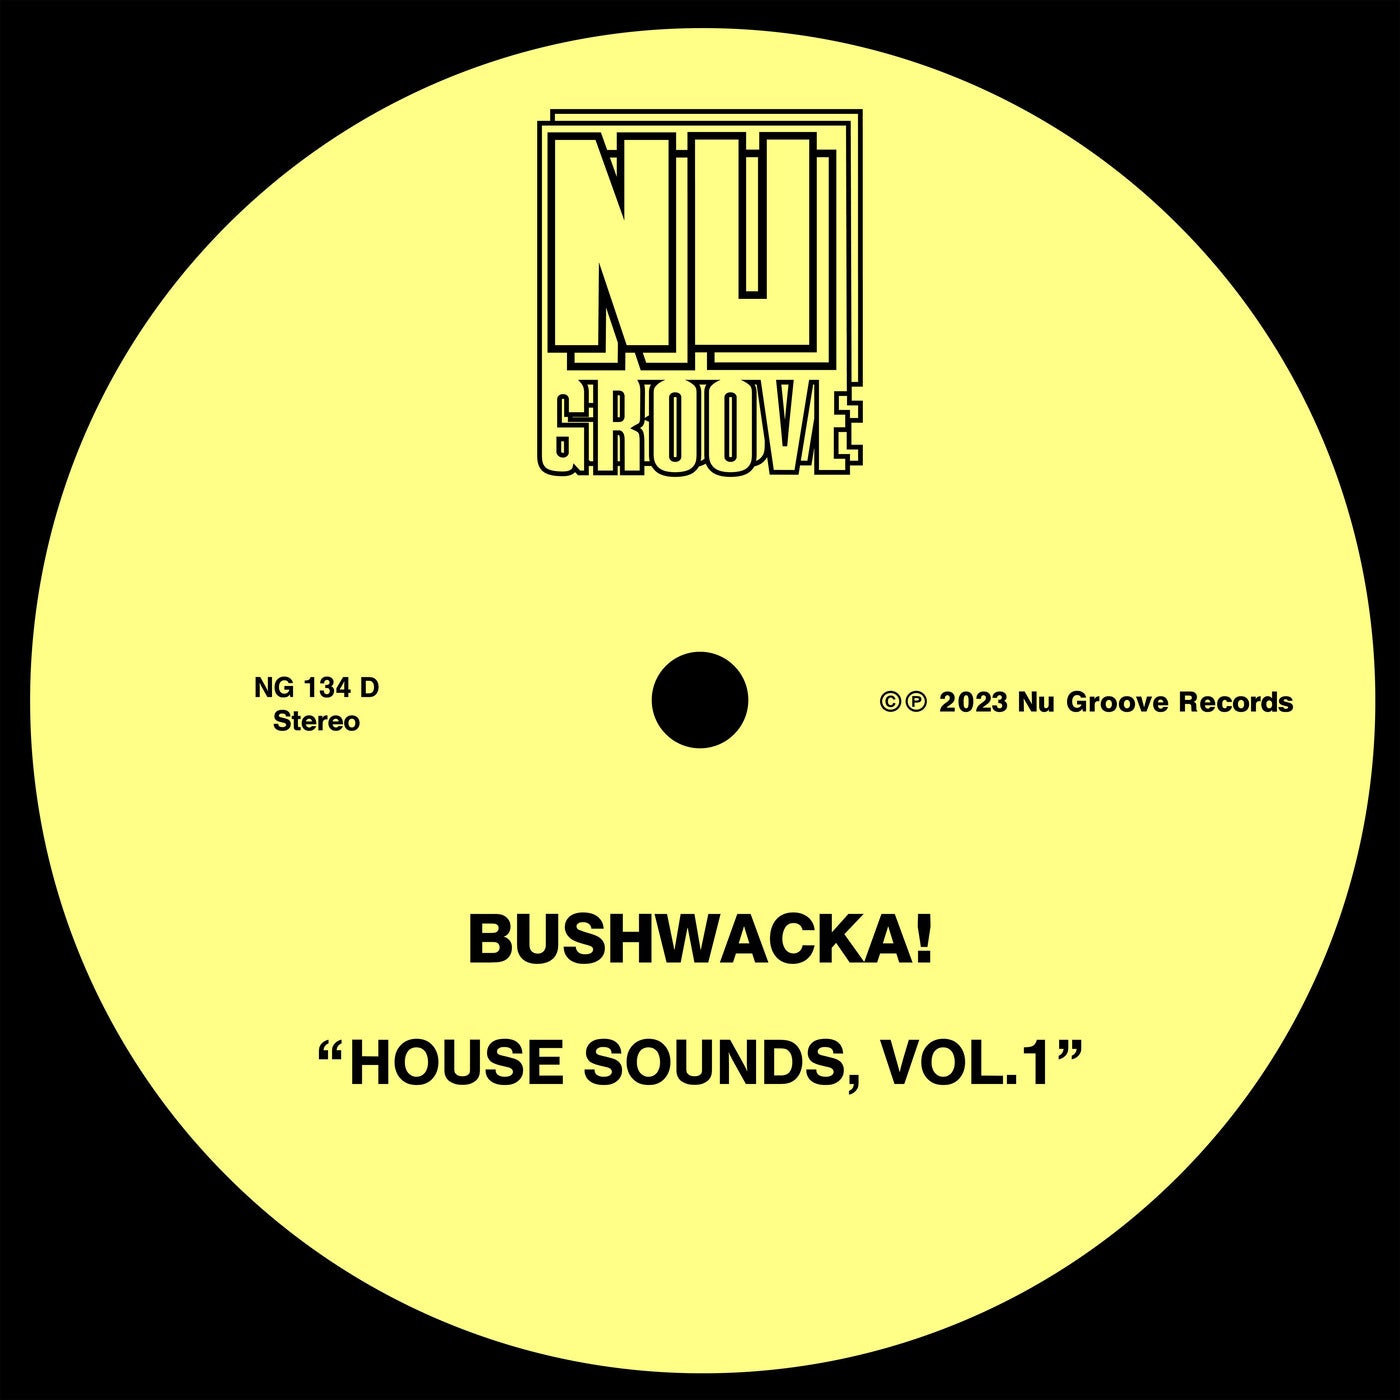 House Sounds, Vol. 1